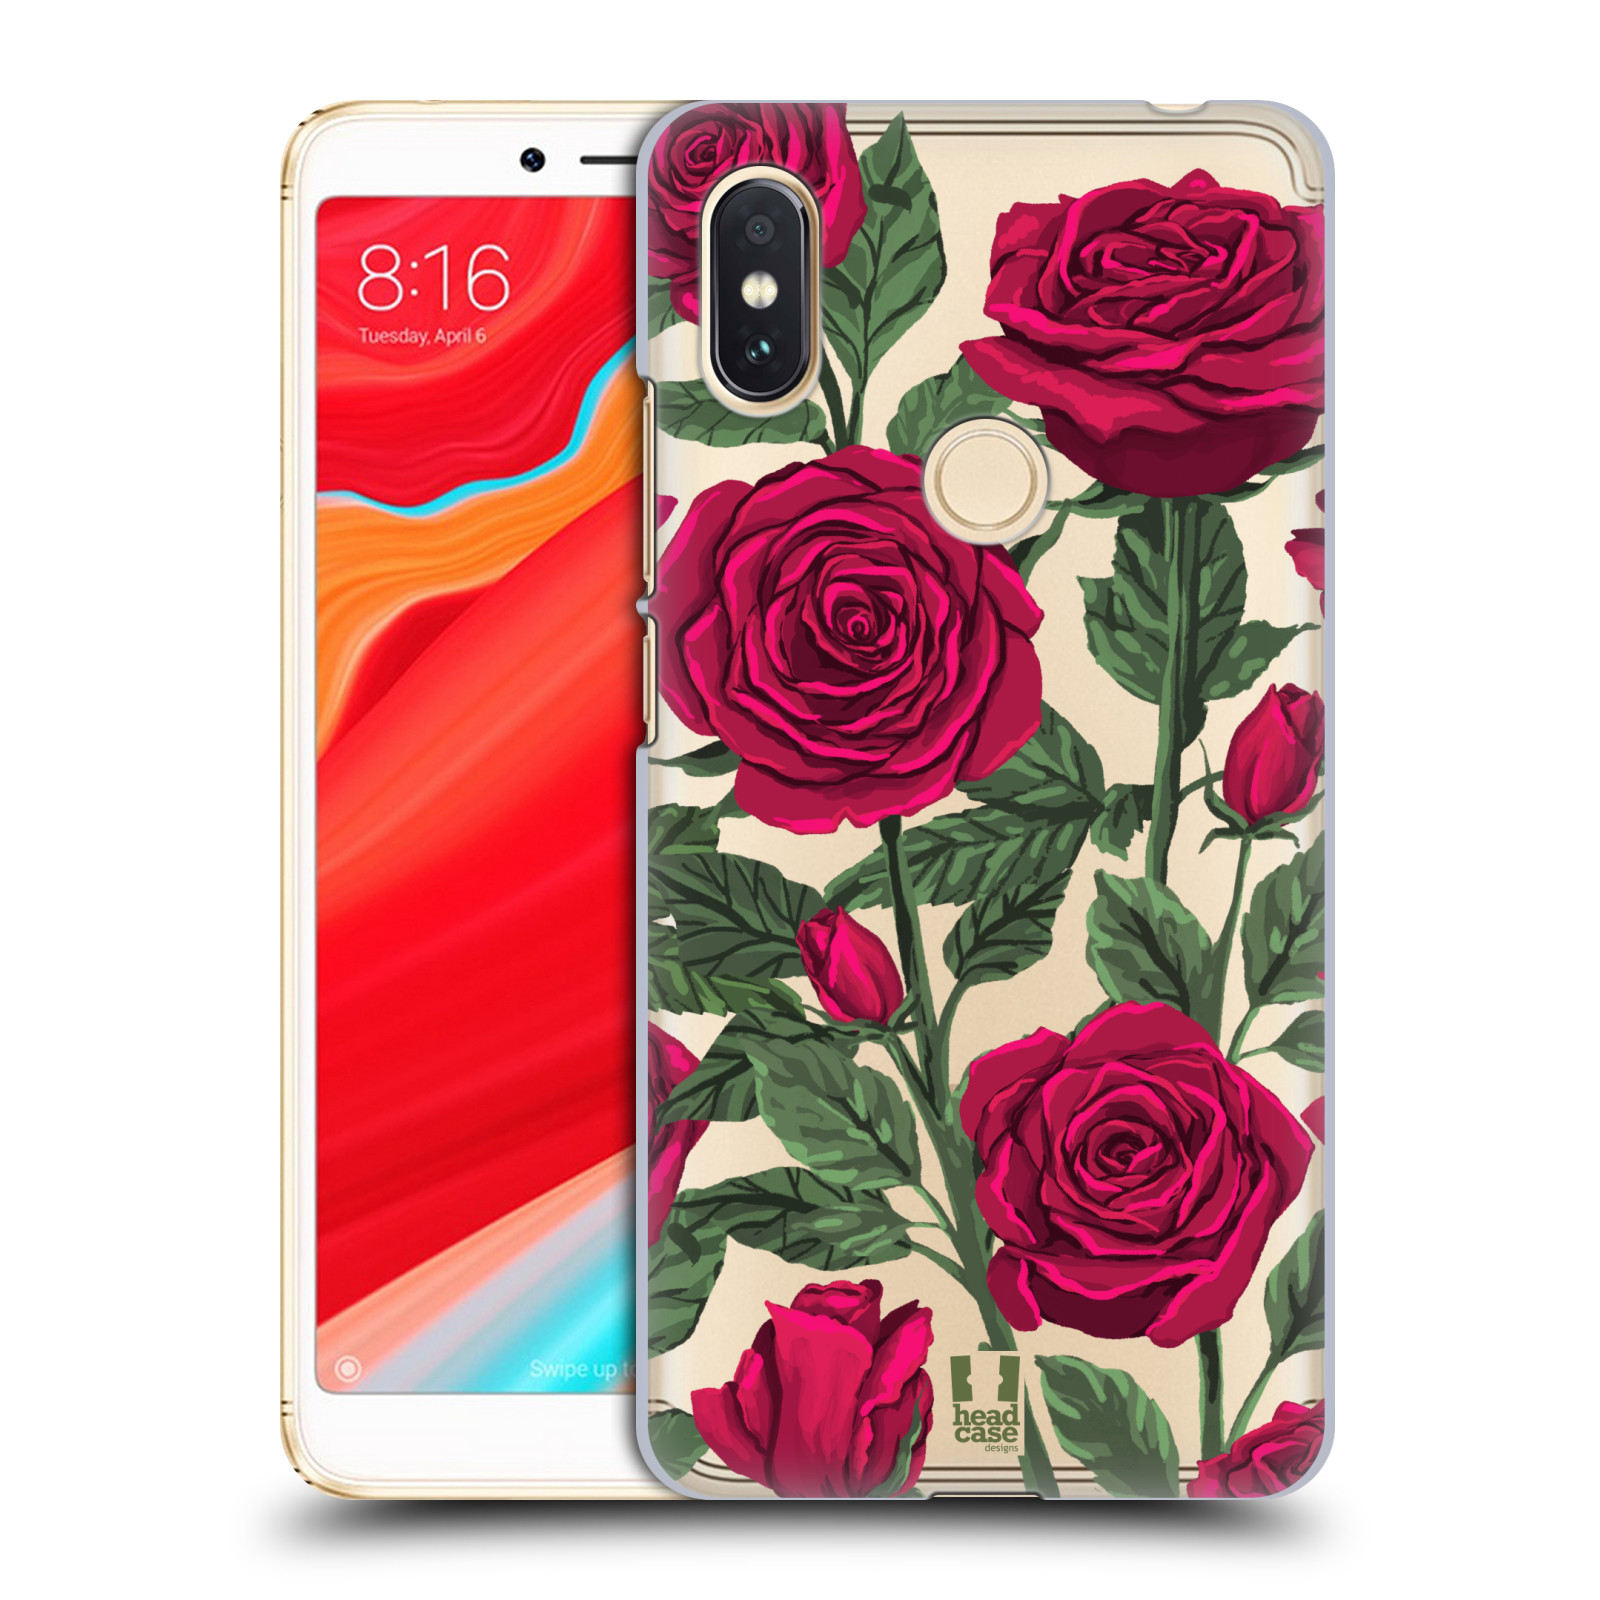 Pouzdro na mobil Xiaomi Redmi S2 - HEAD CASE - květina růže